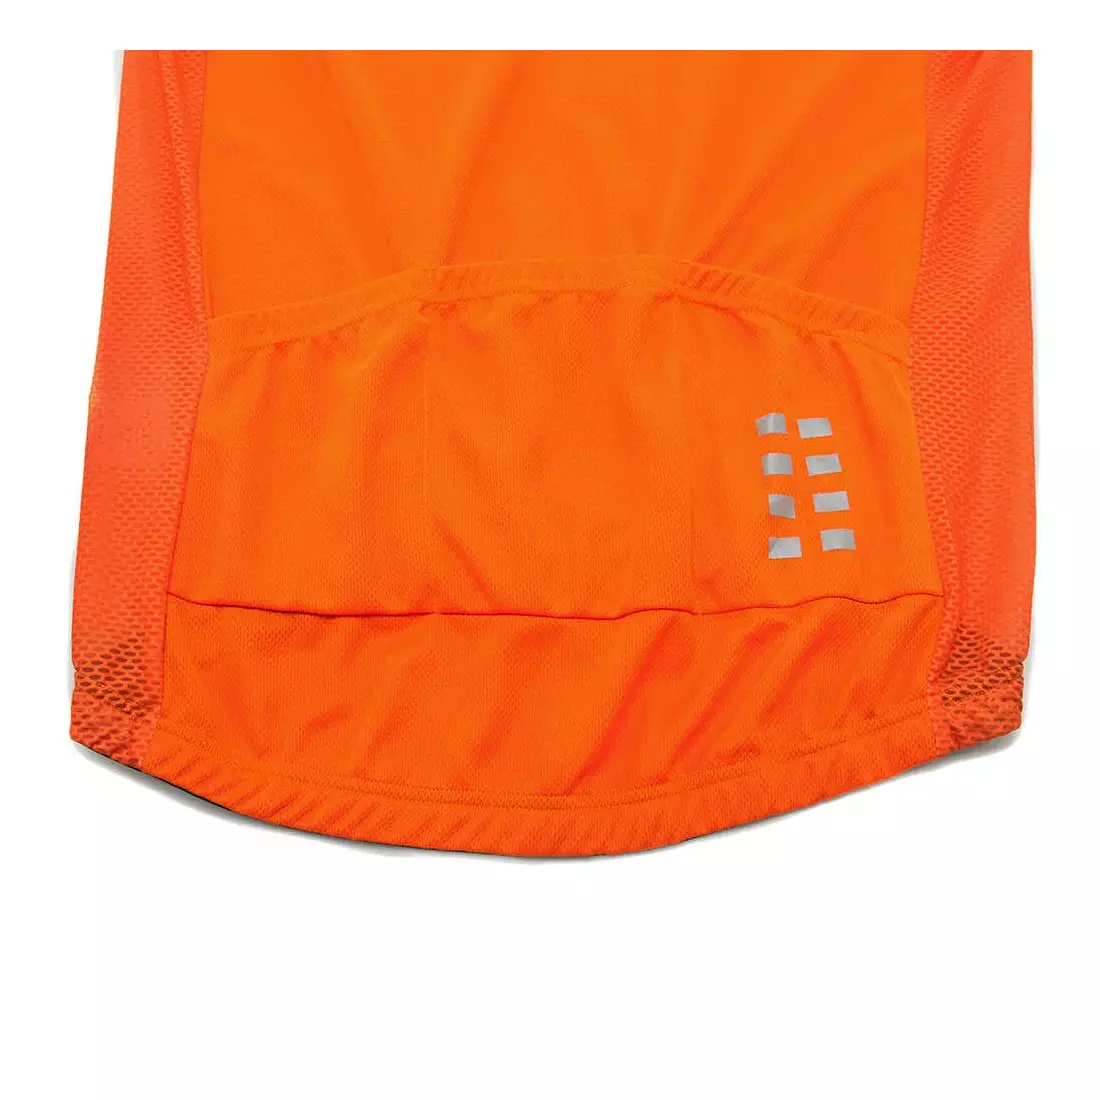 WOSAWE BL247-O pánsky cyklistický dres s krátkym rukávom, oranžový